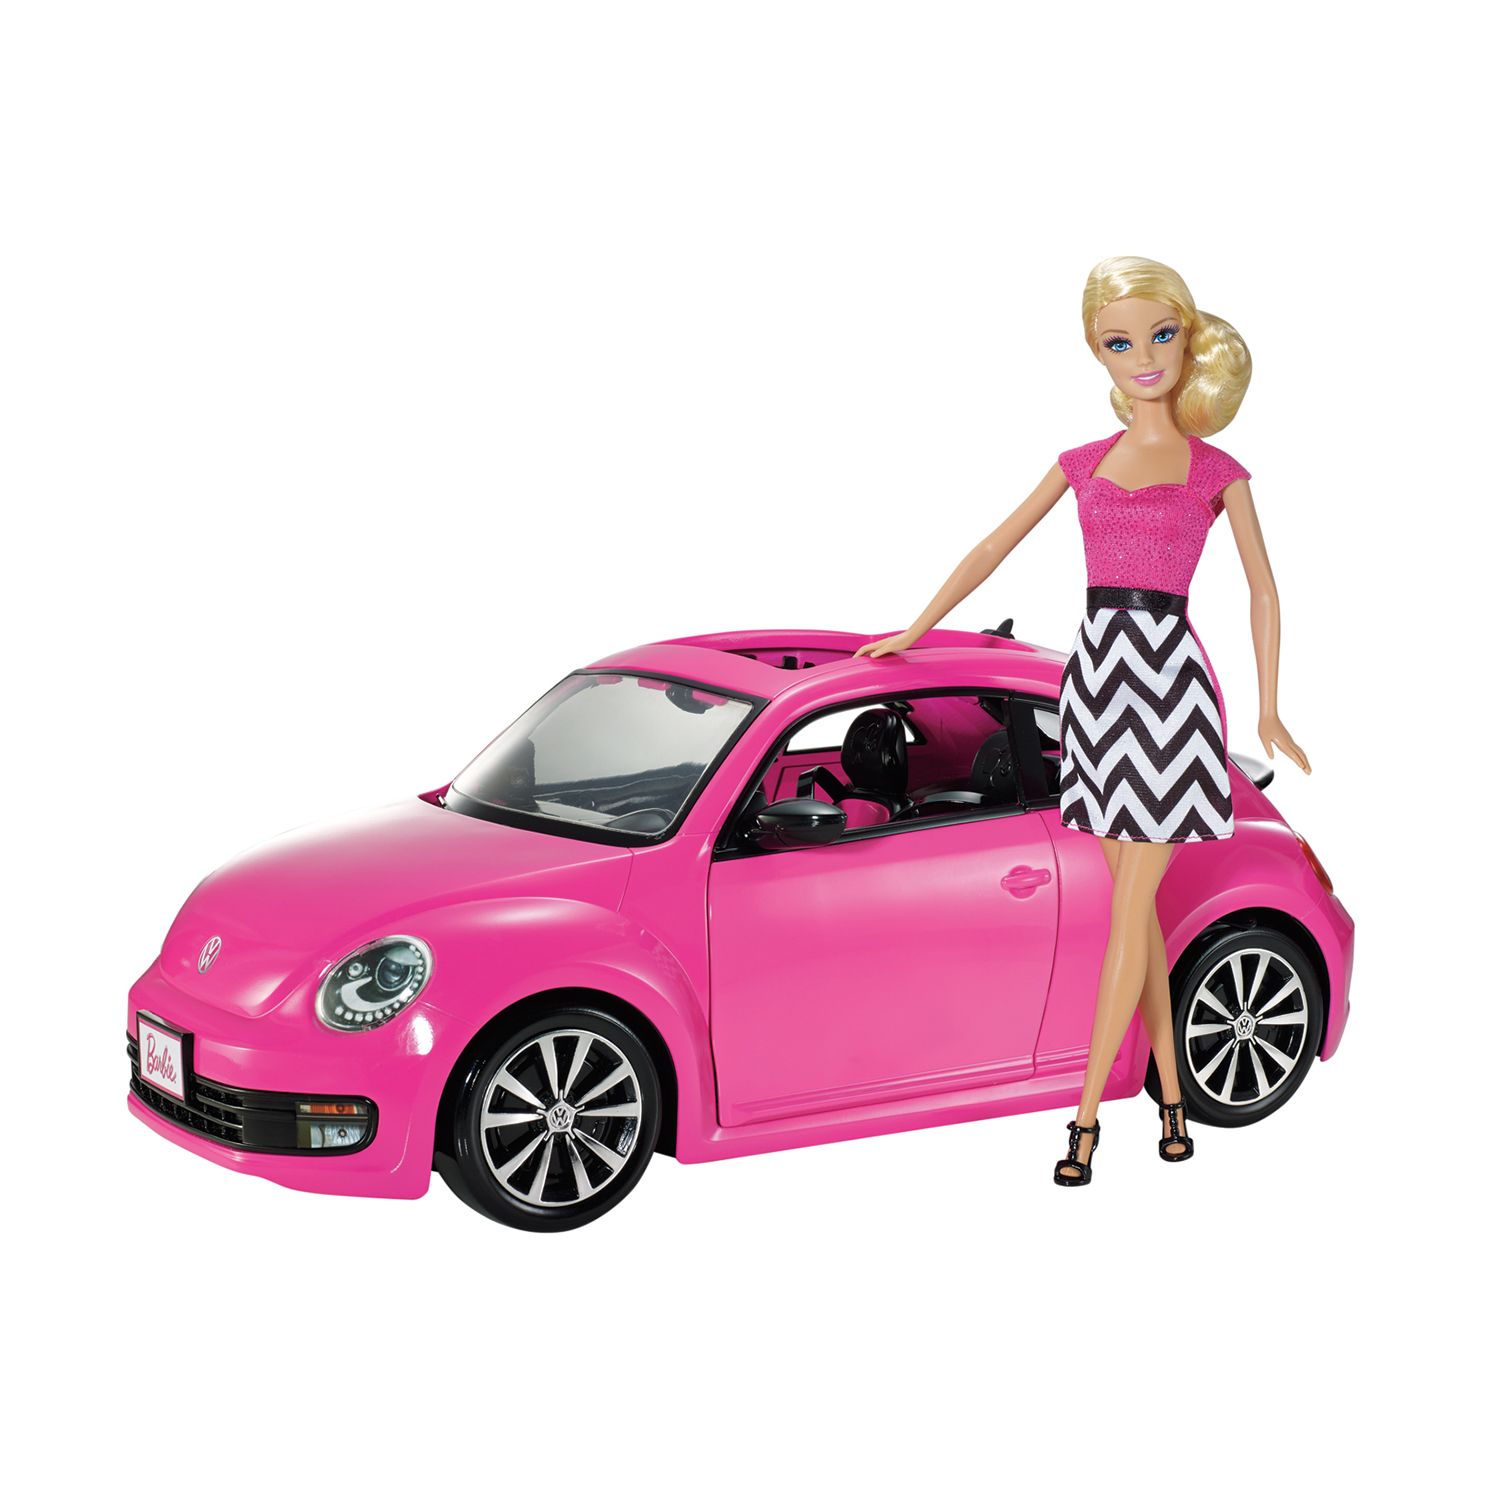 barbie car and closet set